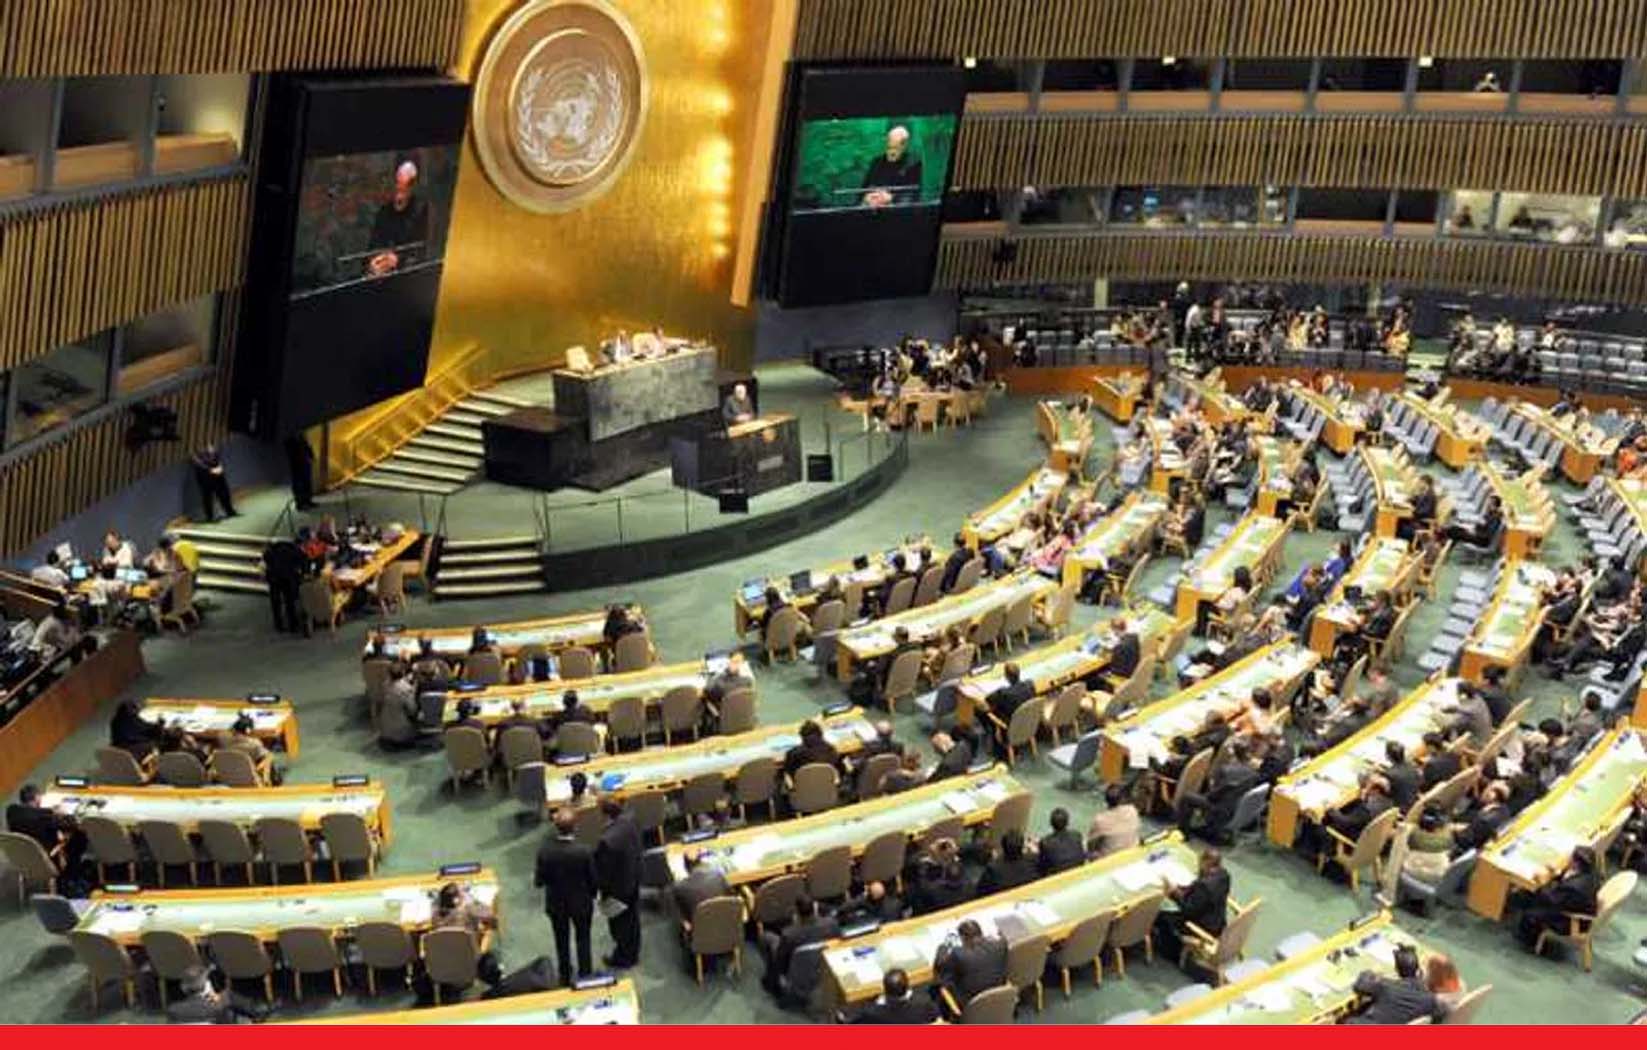 संयुक्त राष्ट्र महासभा में भारत की मांग, नए स्थायी सदस्यों को भी दिया जाए वीटो का अधिकार